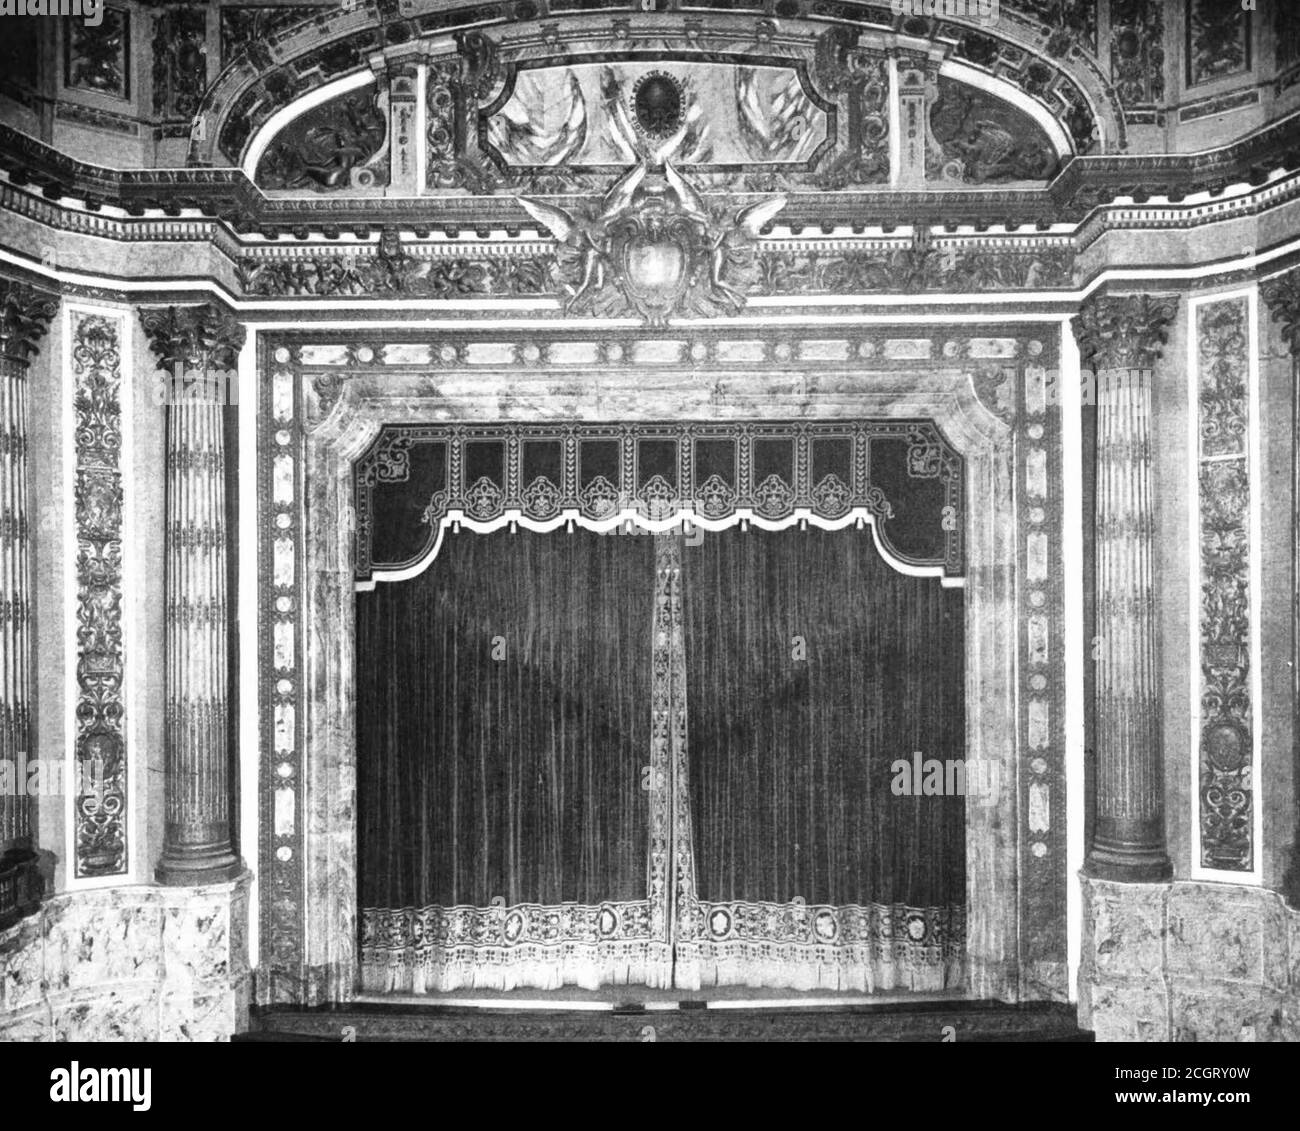 Vue sur la scène du New Theatre sur Central Park West à New York, vers 1909 Banque D'Images